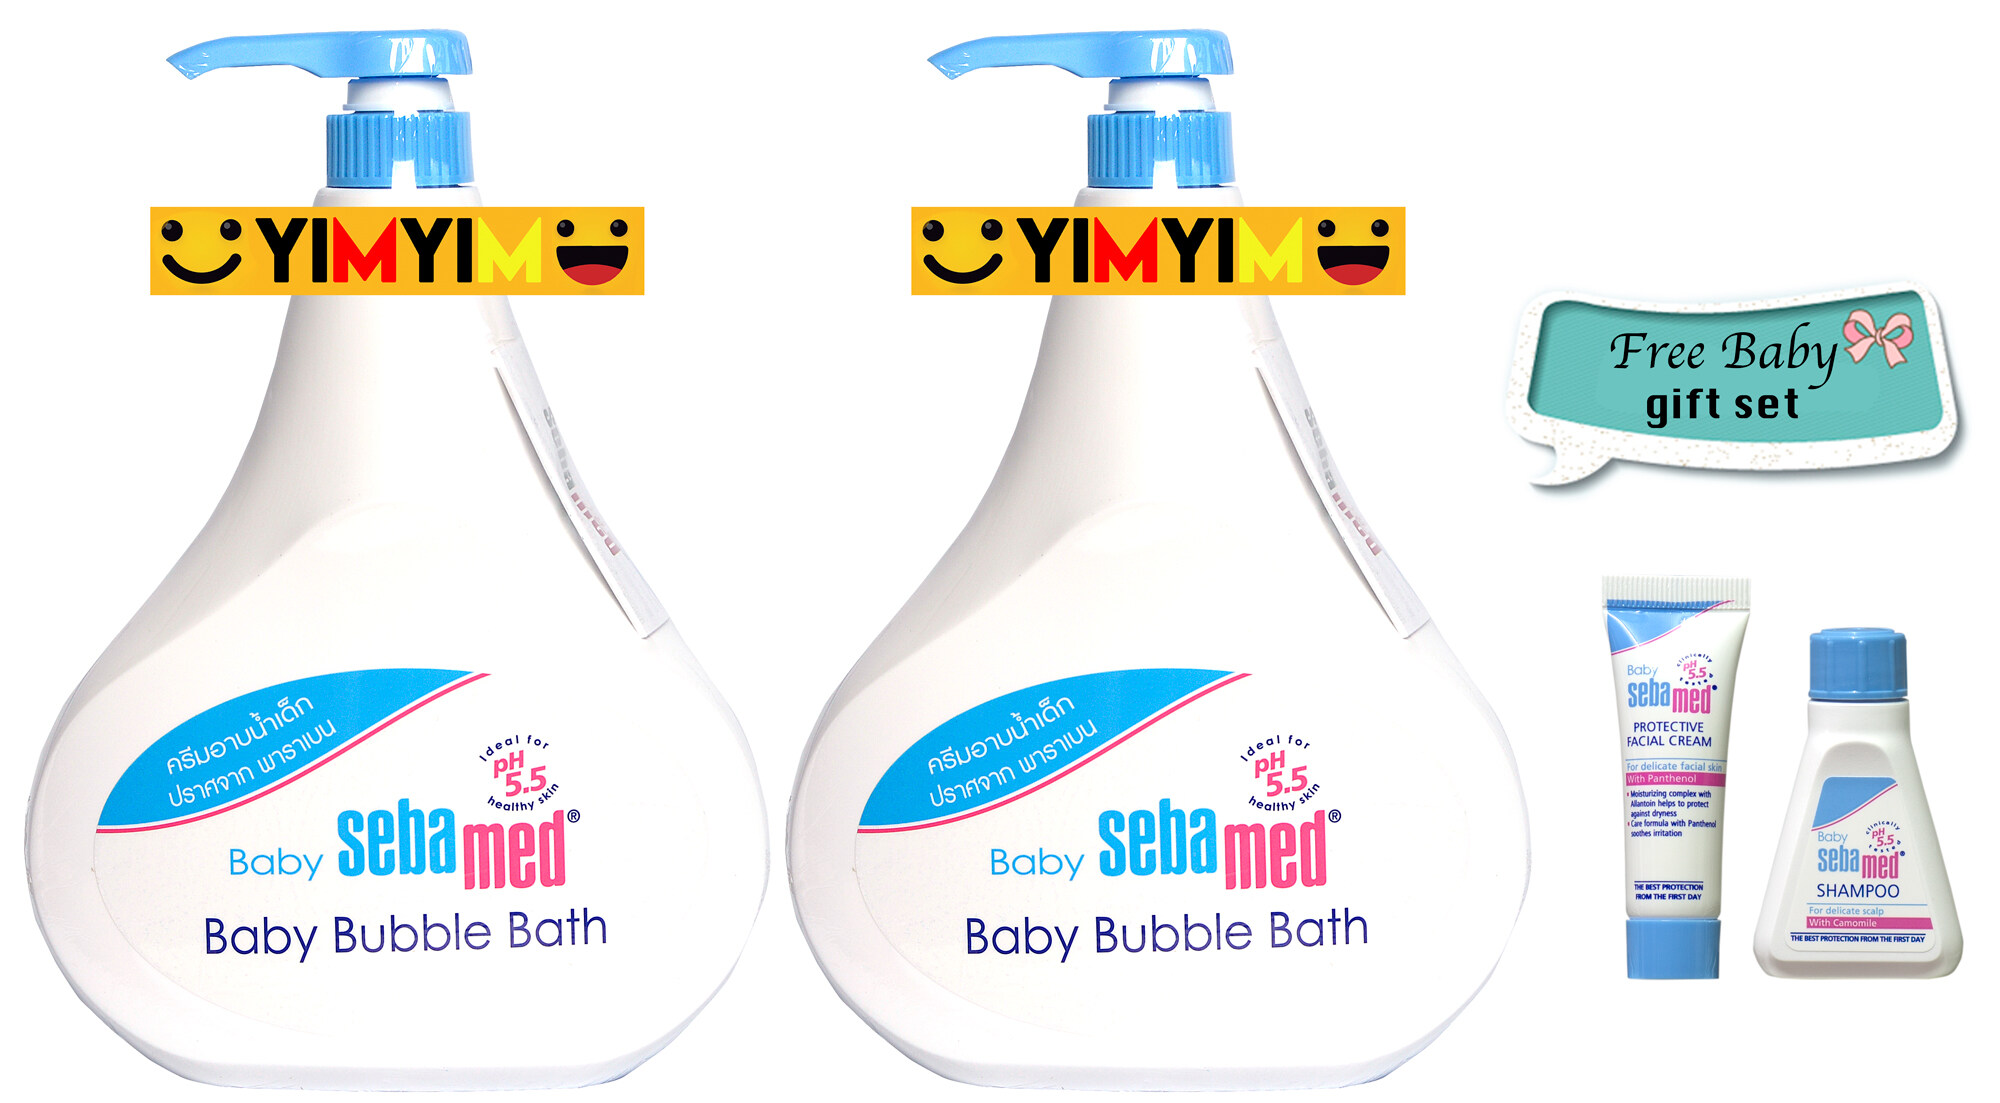 แนะนำ โปรจัดหนัก Sebamed BABY SEBAMED BABY BUBBLE BATH เบบี้ ซีบาเมด เบบี้ บับเบิ้ล บาธ 1,000 ml x 2 ขวด หมดอายุ 08/2021 ฟรี Sebamed Baby Gift Set 2 ชิ้น